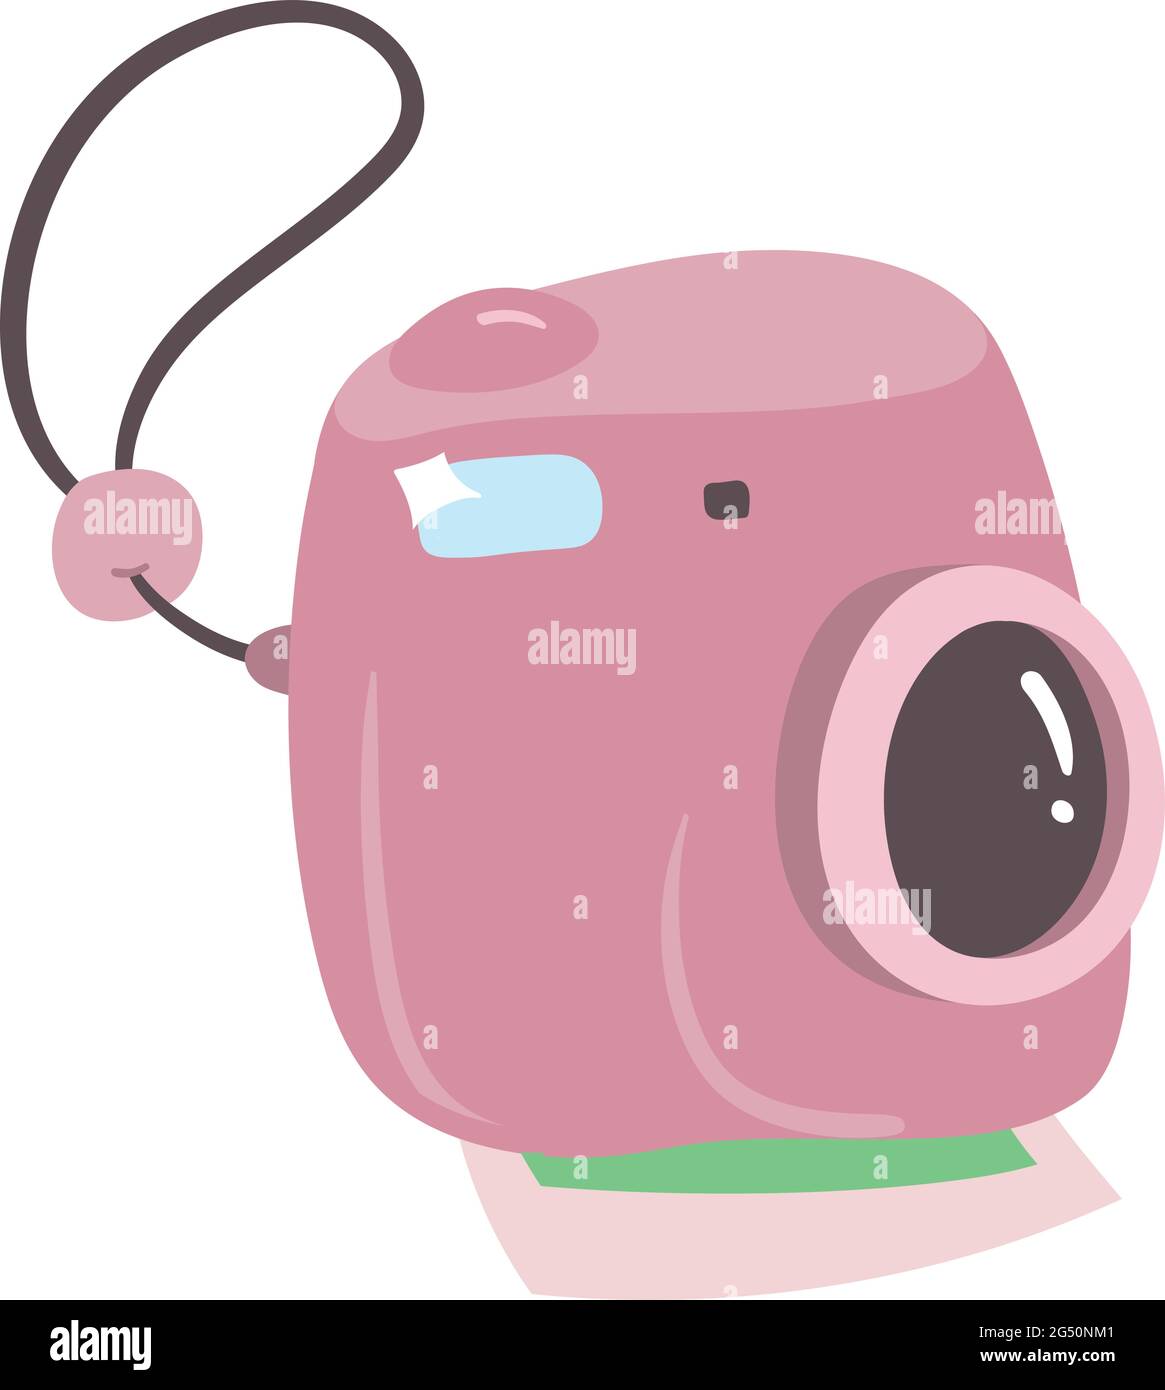 Carina fotocamera Polaroid in colore rosa con stampa istantanea delle immagini dal basso. Accessori da viaggio per backpackers. Arte vettoriale per gli indispensabili per il viaggio. Illustrazione Vettoriale